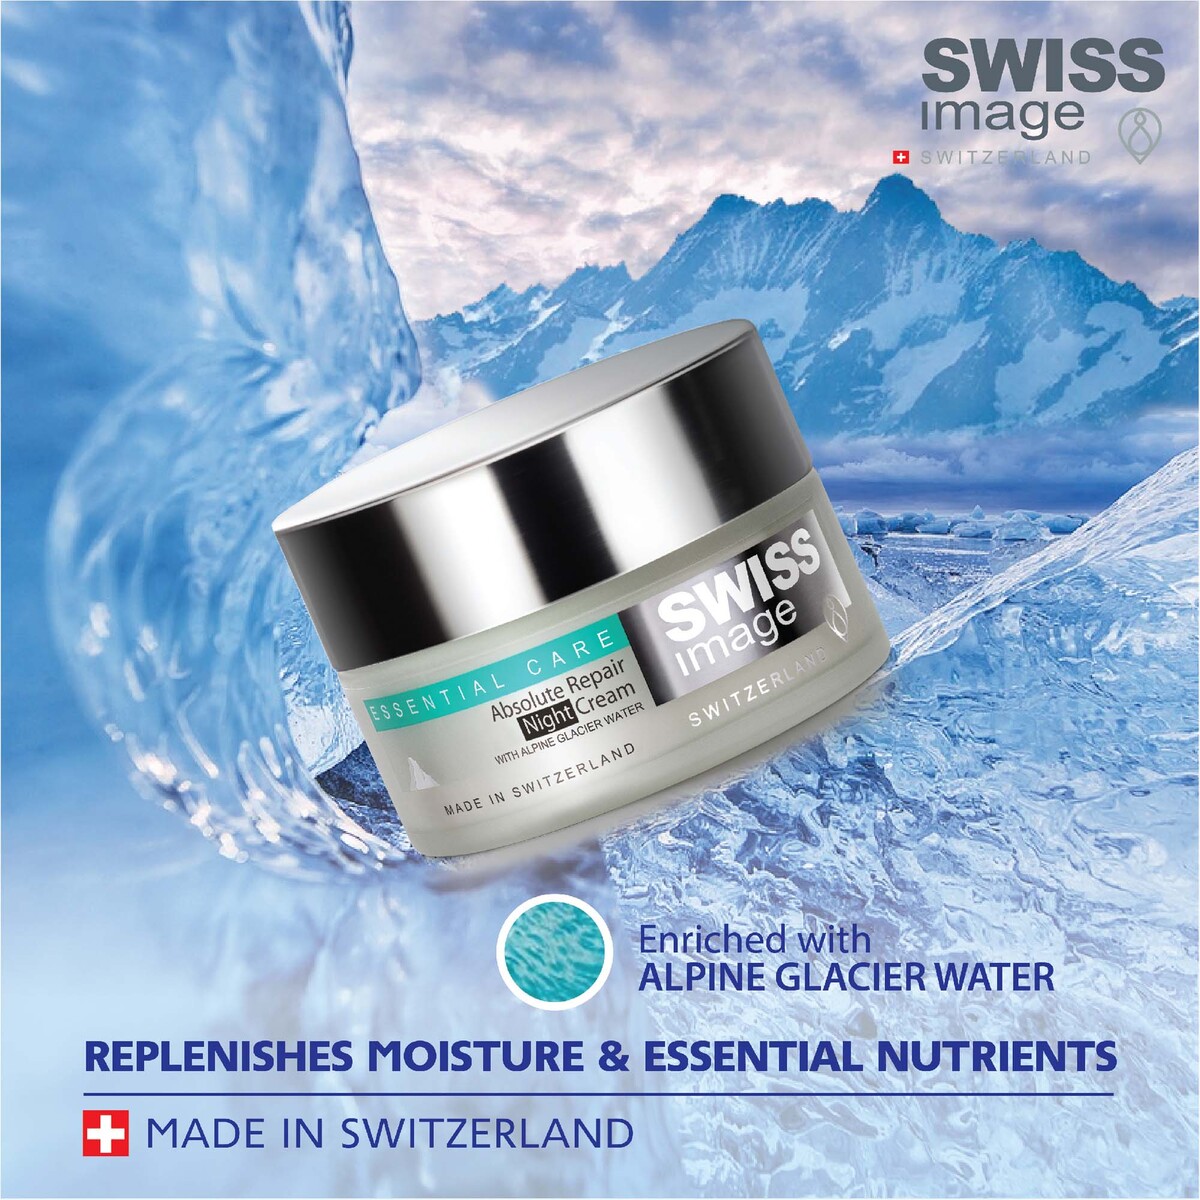 Swiss Image Essential Care Absolute Repair Night Cream 50 ml